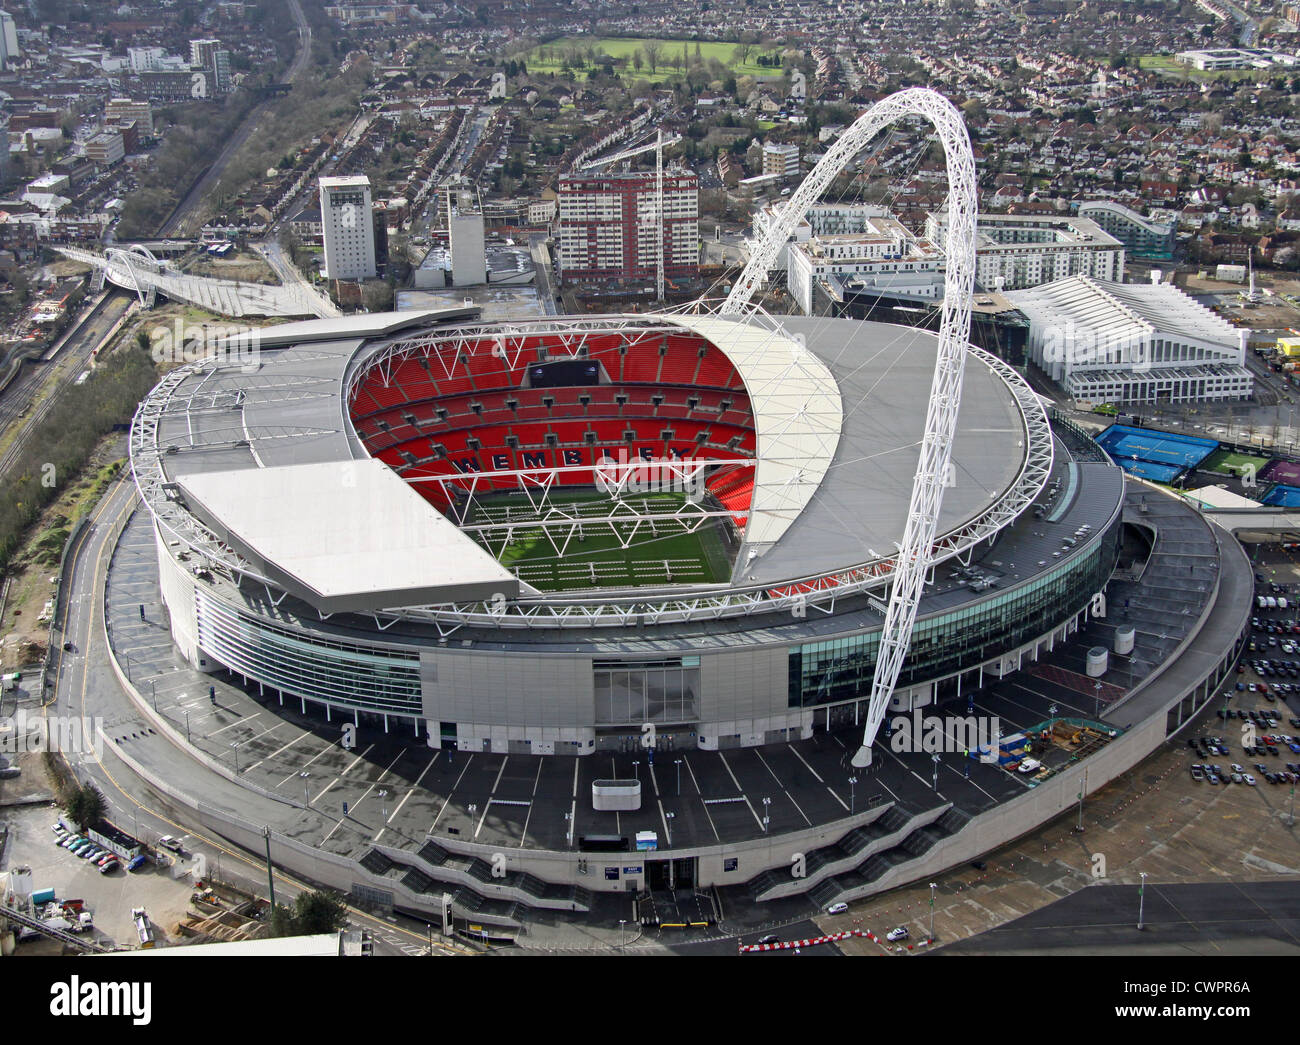 Vista aérea del estadio de Wembley, Londres Foto de stock